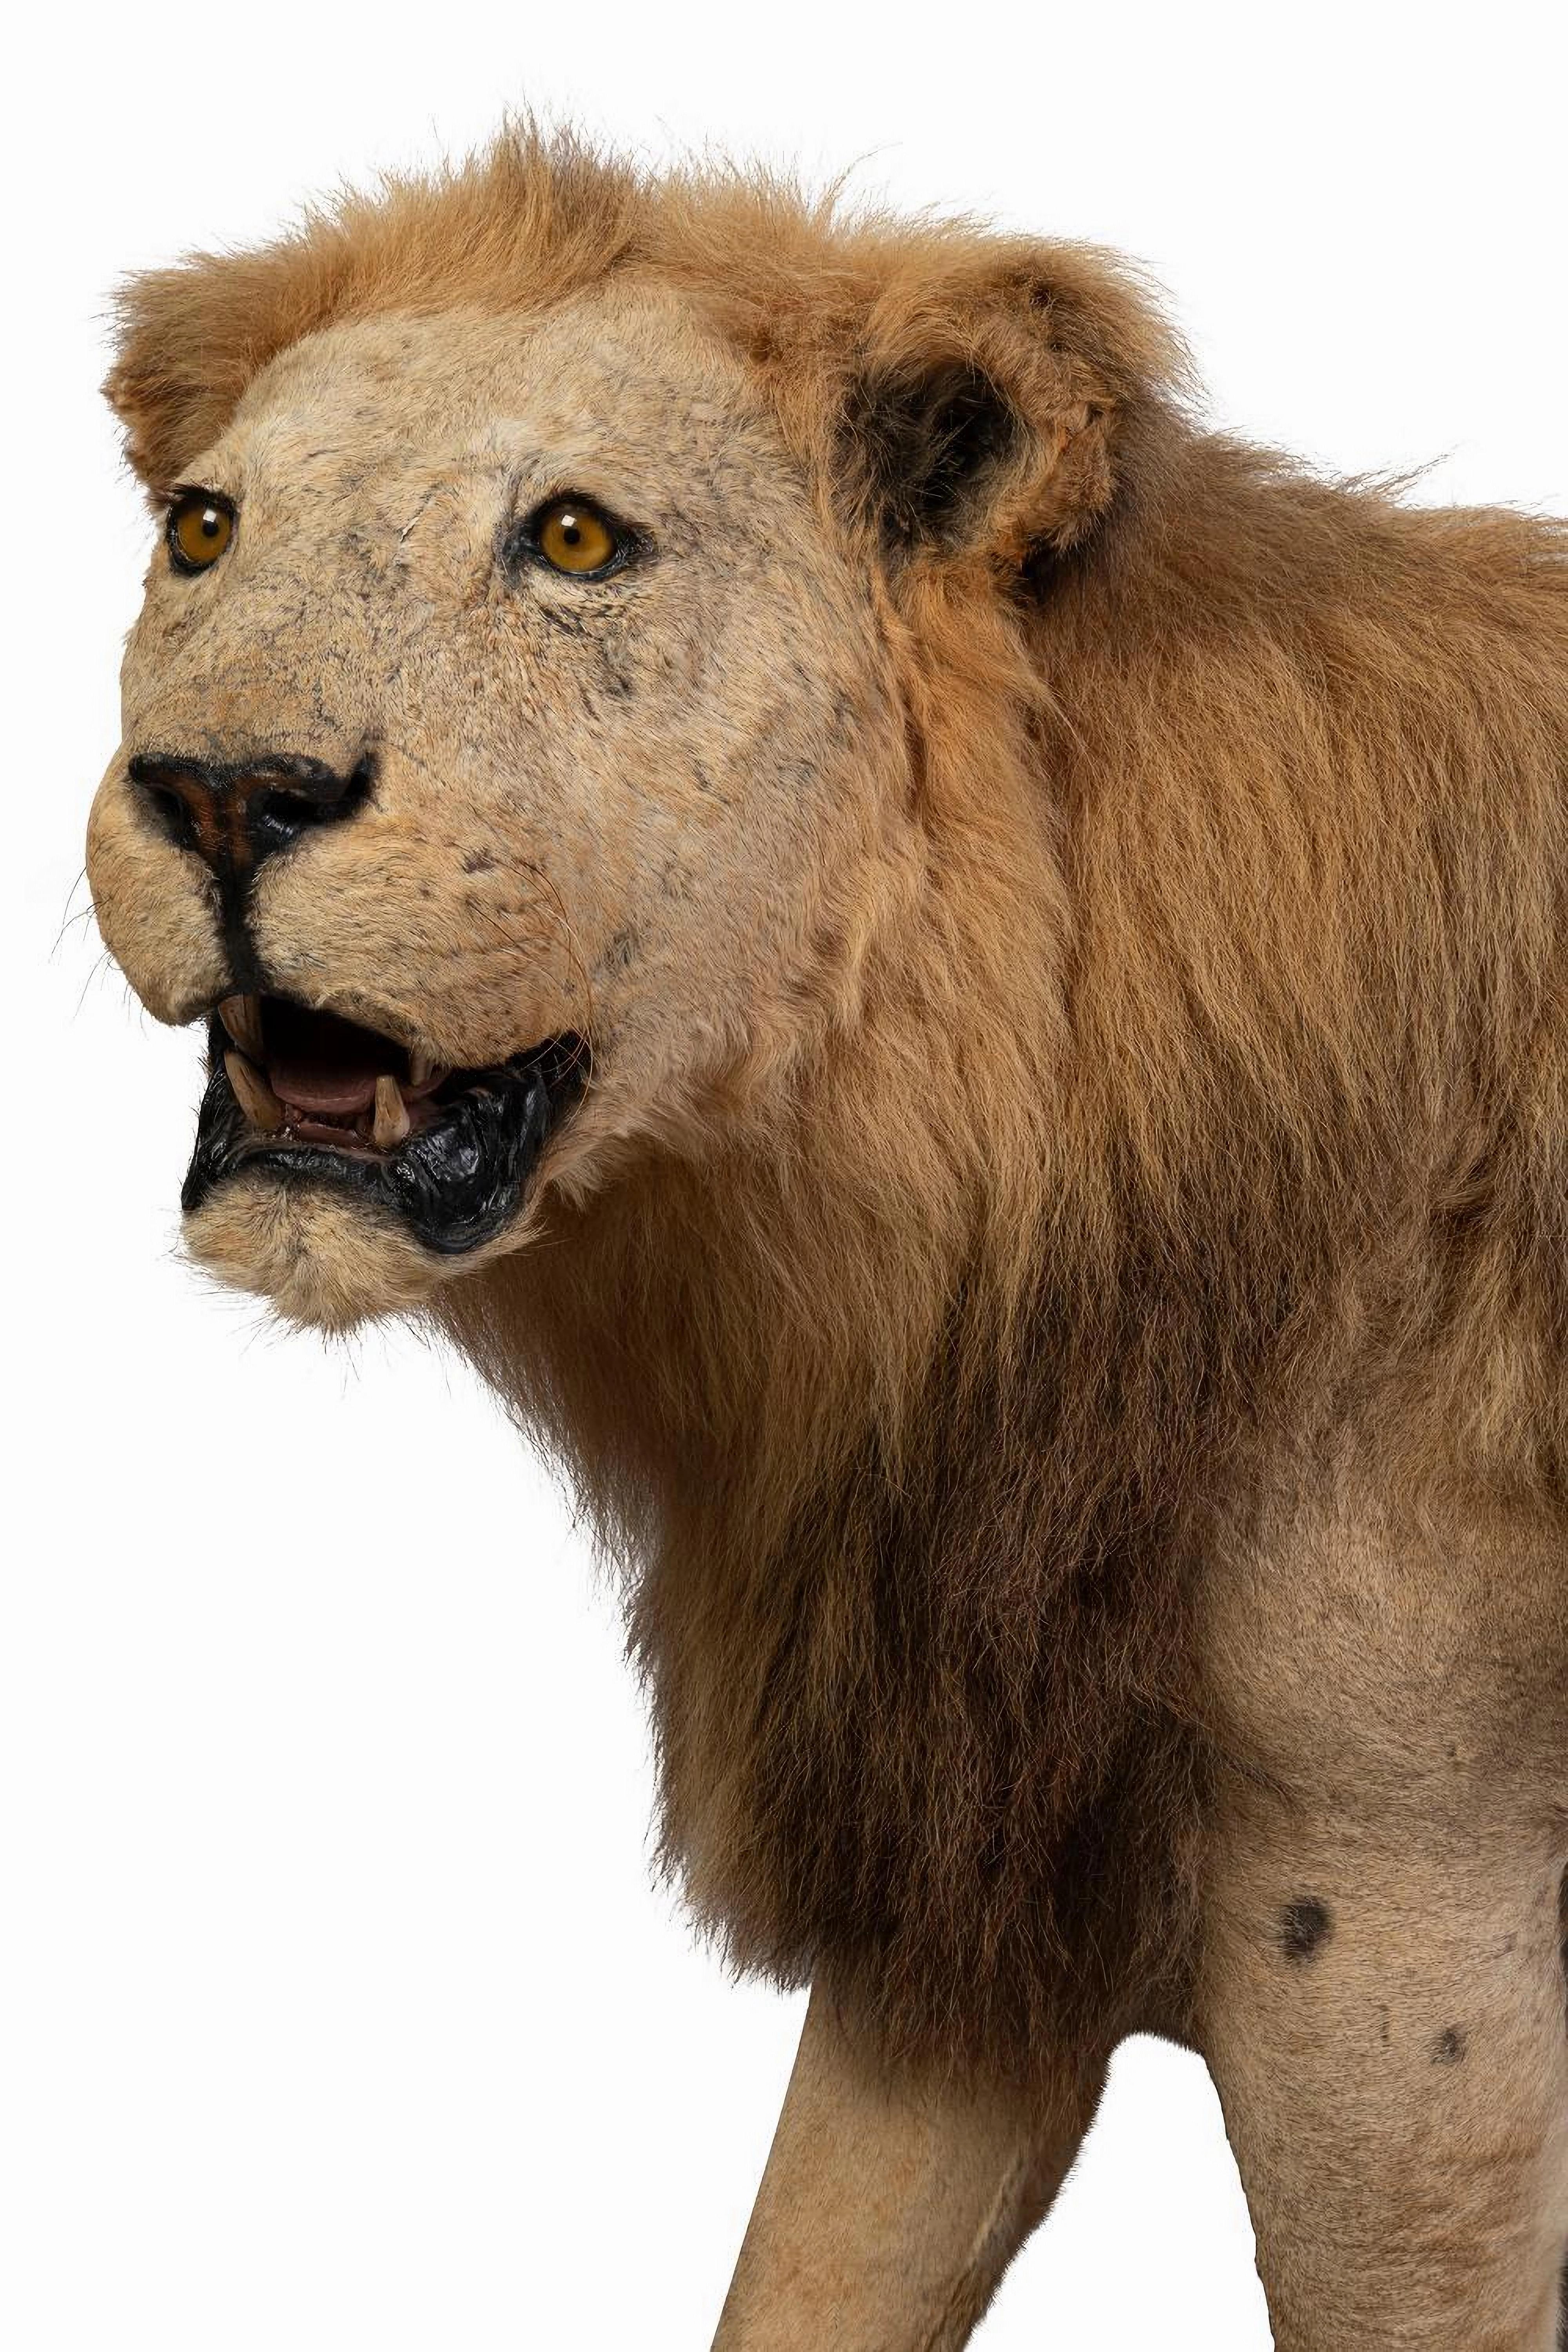 Impressionnant lion masculin africain assailli entièrement monté, 20e siècle

Dans une attitude de marche et la tête inclinée vers la gauche, sur un socle naturaliste de roches et de sable, dans un cadre en bois.

Dimensions : Hauteur : 124cm 